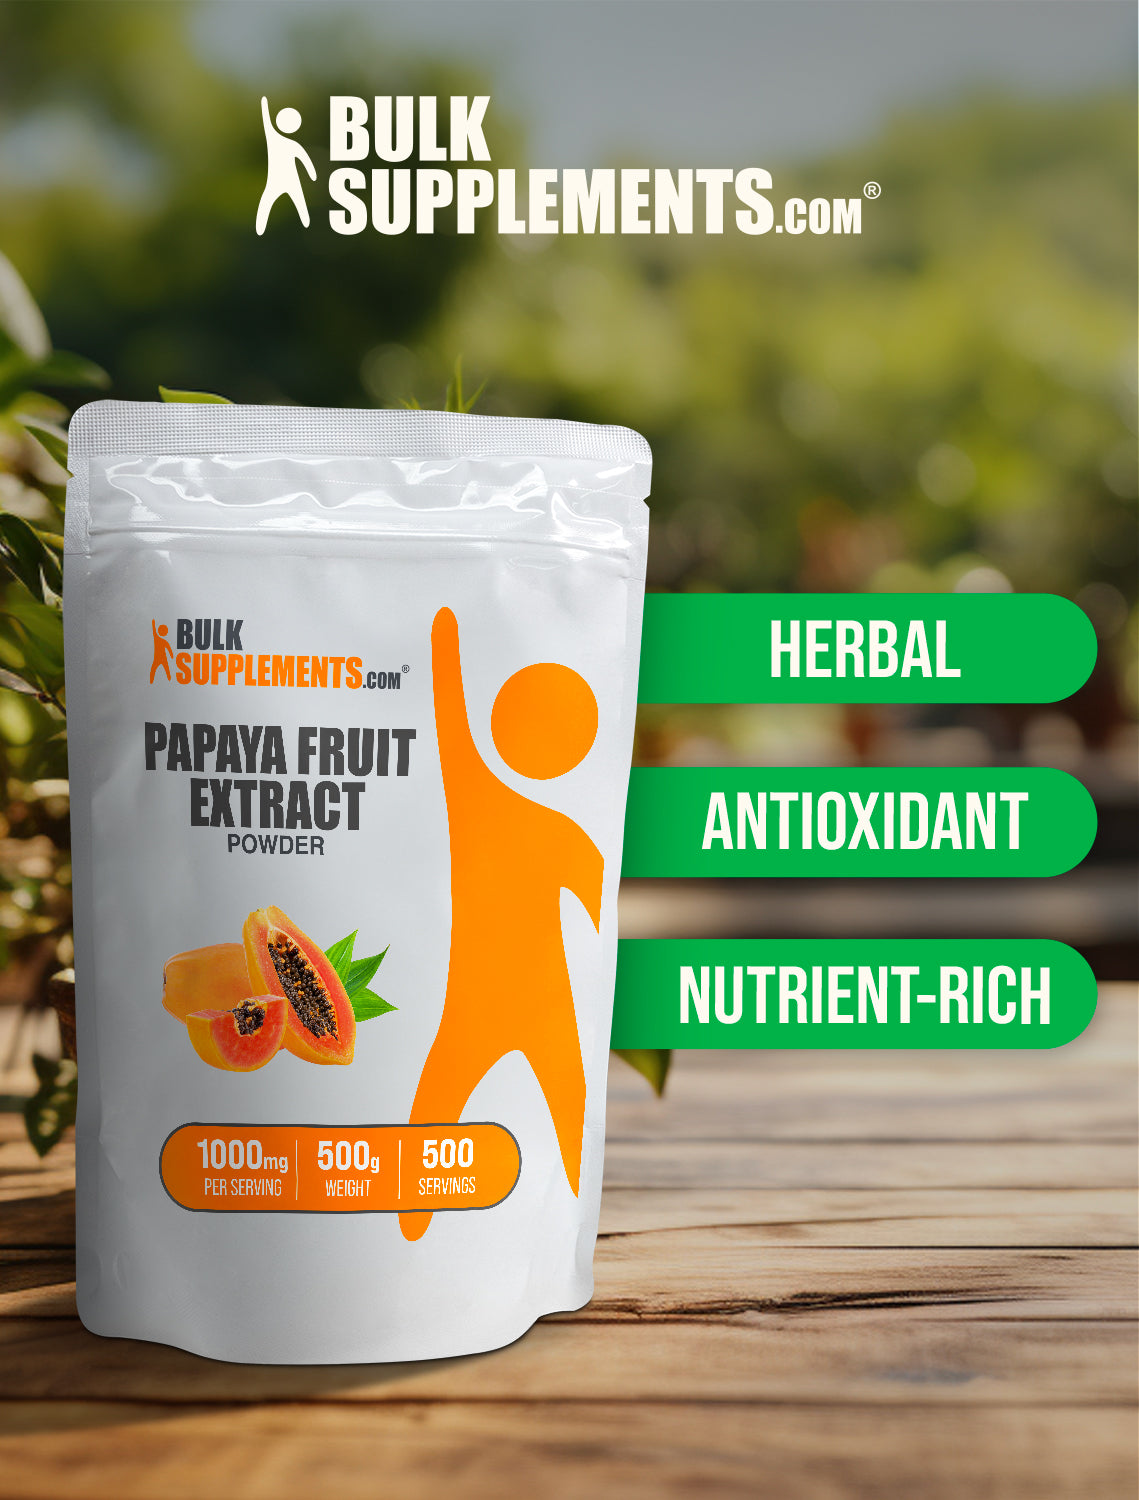 Papaya fruit extract powder 500g keywords image